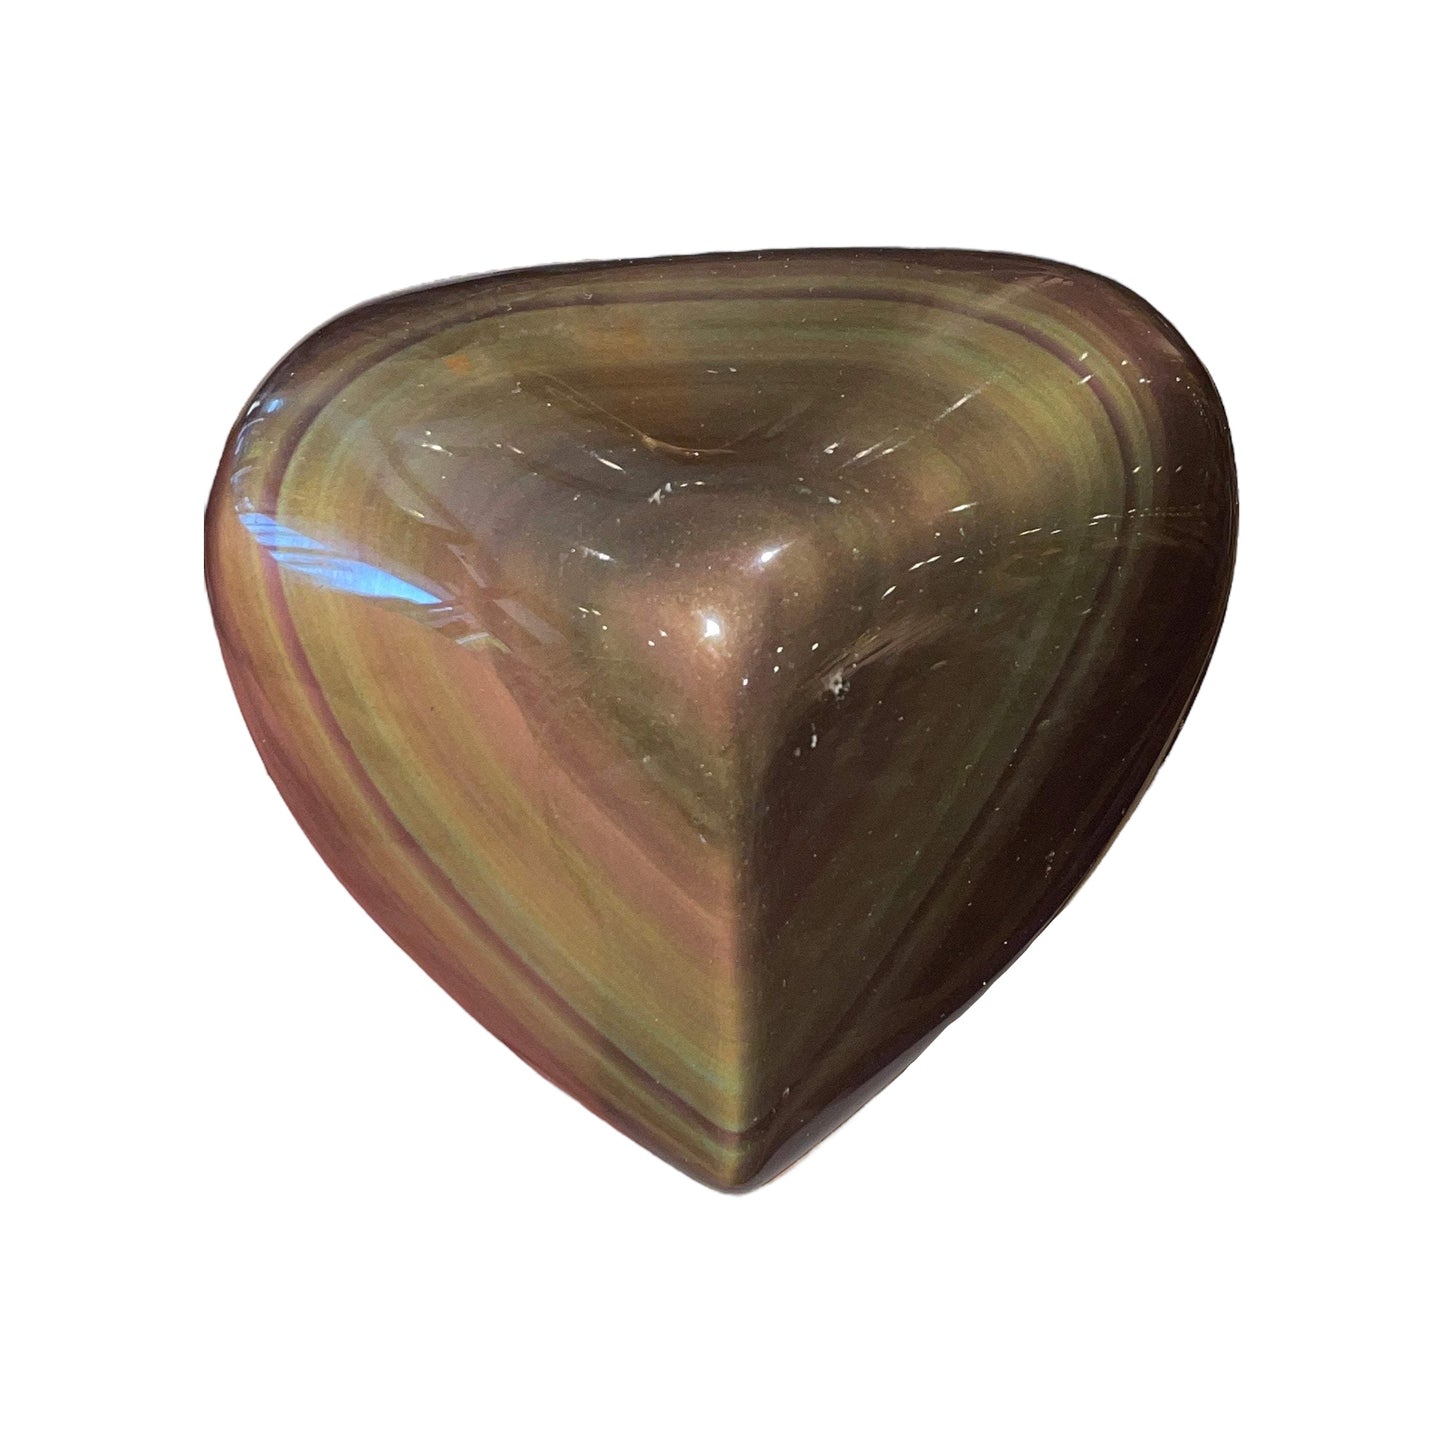 Obsidian Heart Celestial Eye pro kg